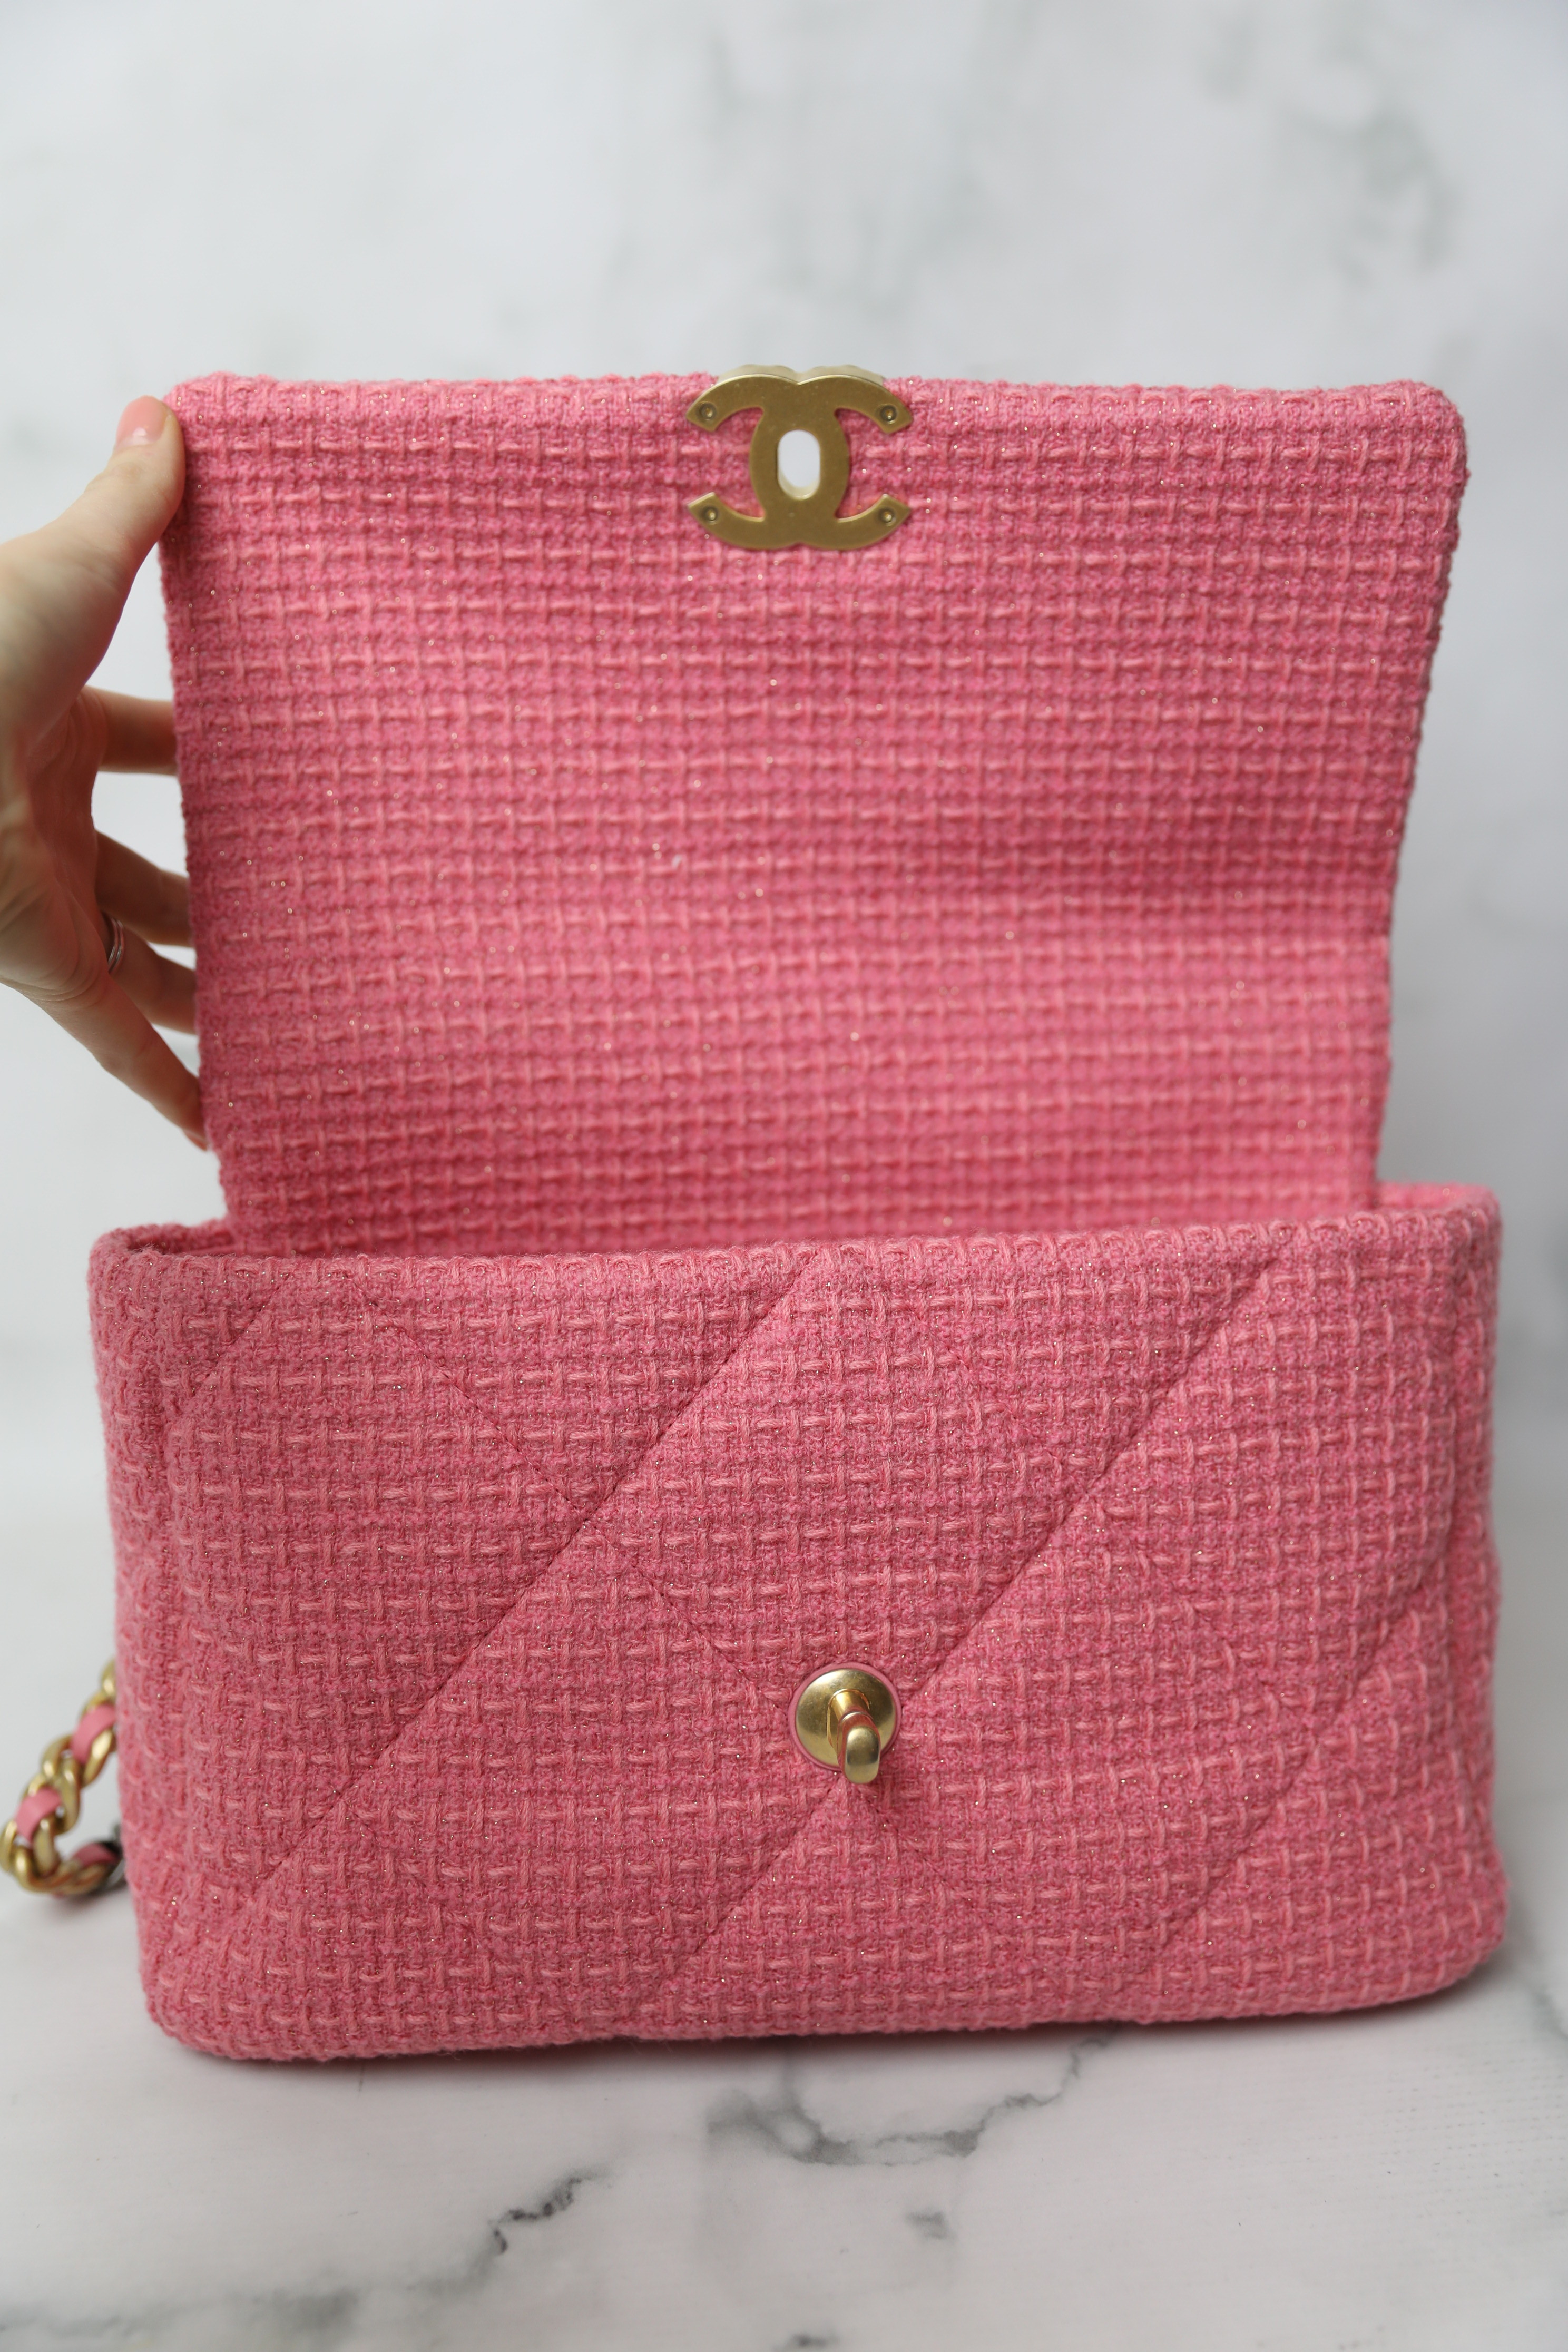 Chanel 19 Large, Pink Tweed, New in Box WA001 - Julia Rose Boston